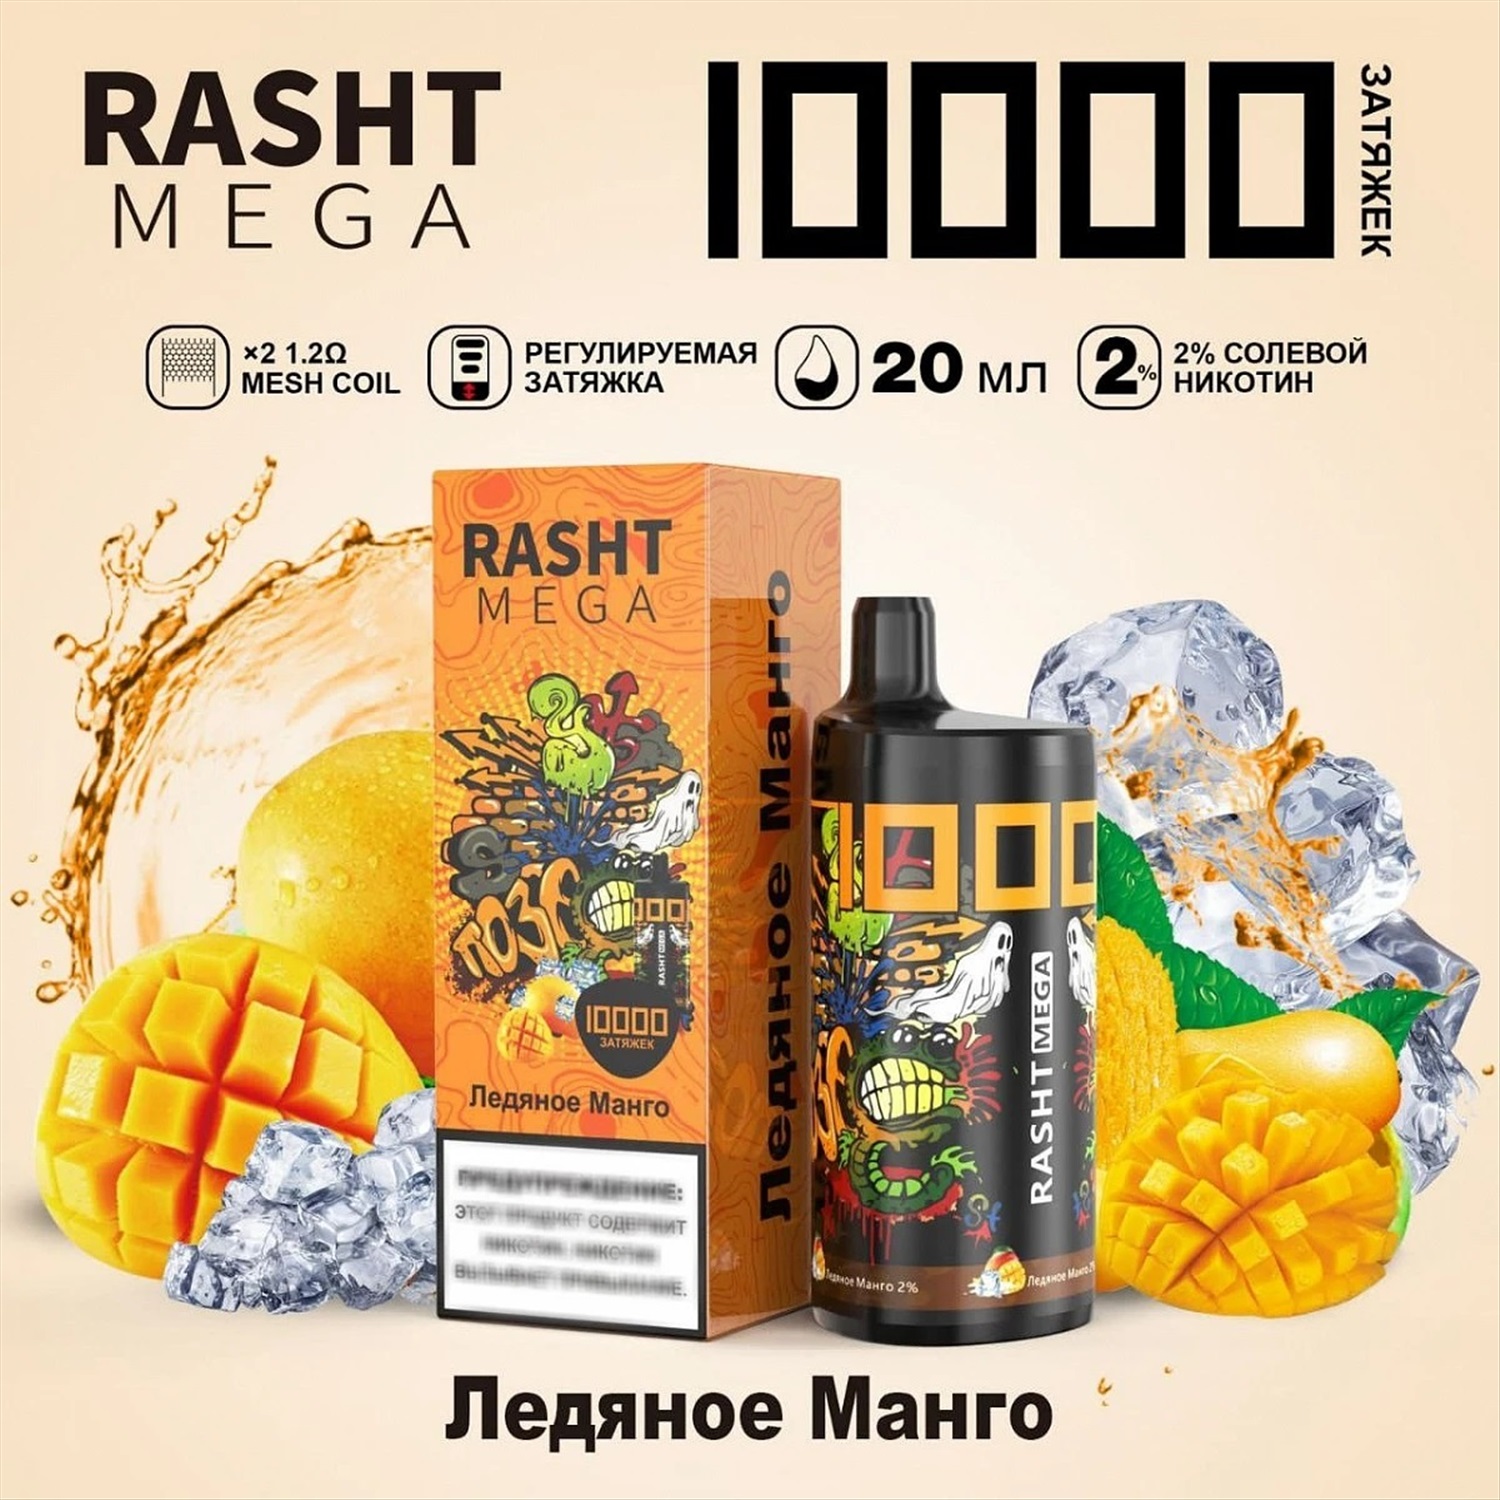 Электронка 10000. Электронная сигарета Rasht Mega 10000. Rasht Mega 10000 затяжек. Рашт мега 10000. Электронные сигареты 10000 затяжек манго.